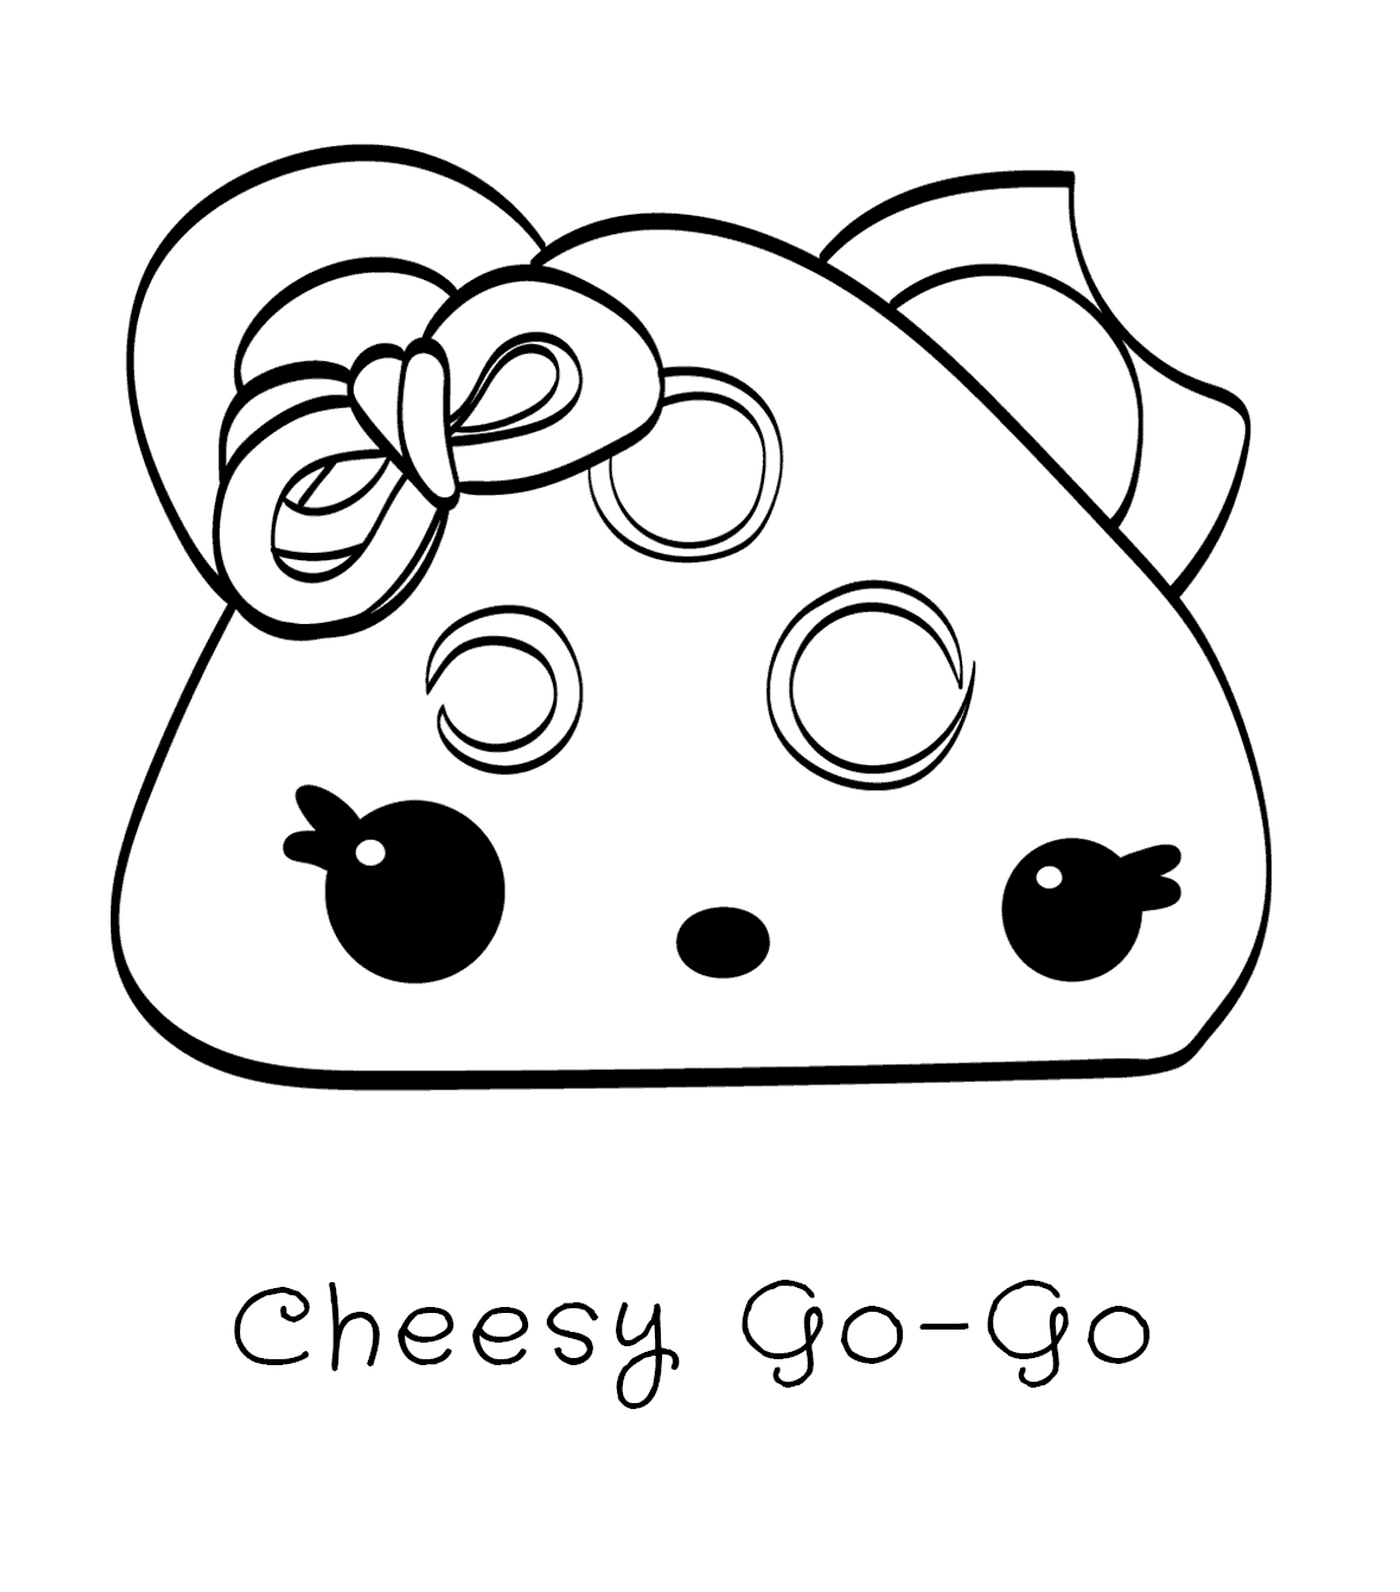  Go Go Go cheese 